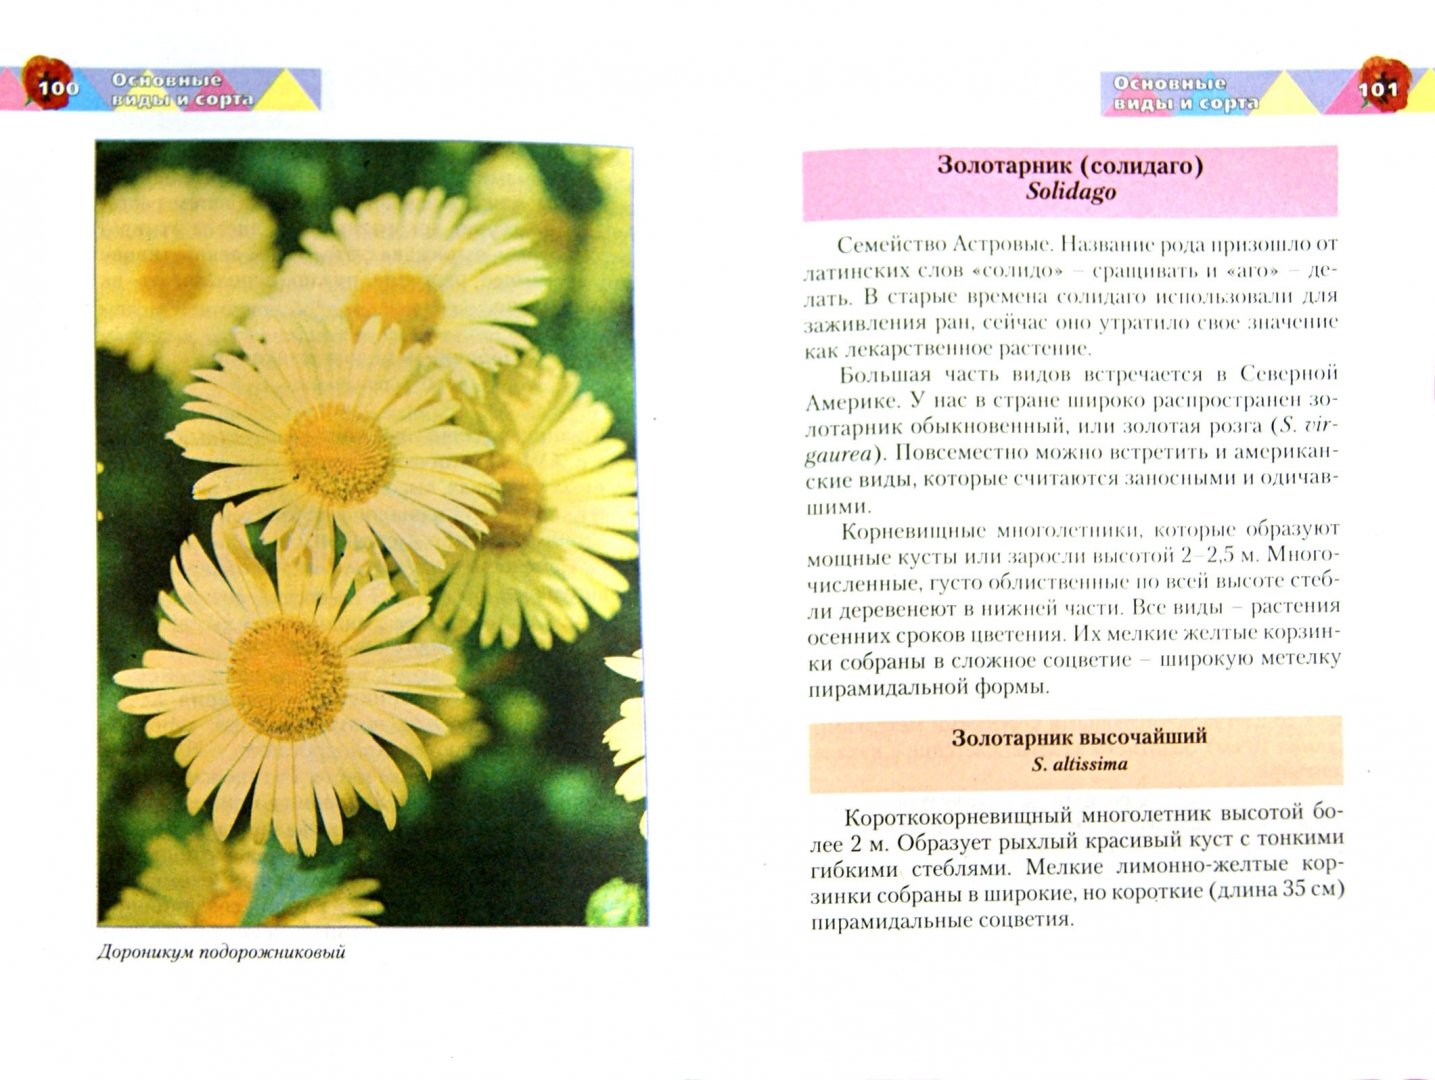 Иллюстрация 1 из 2 для Красивые цветы на вашем участке - Русинова, Карписонова, Вавилова | Лабиринт - книги. Источник: Лабиринт